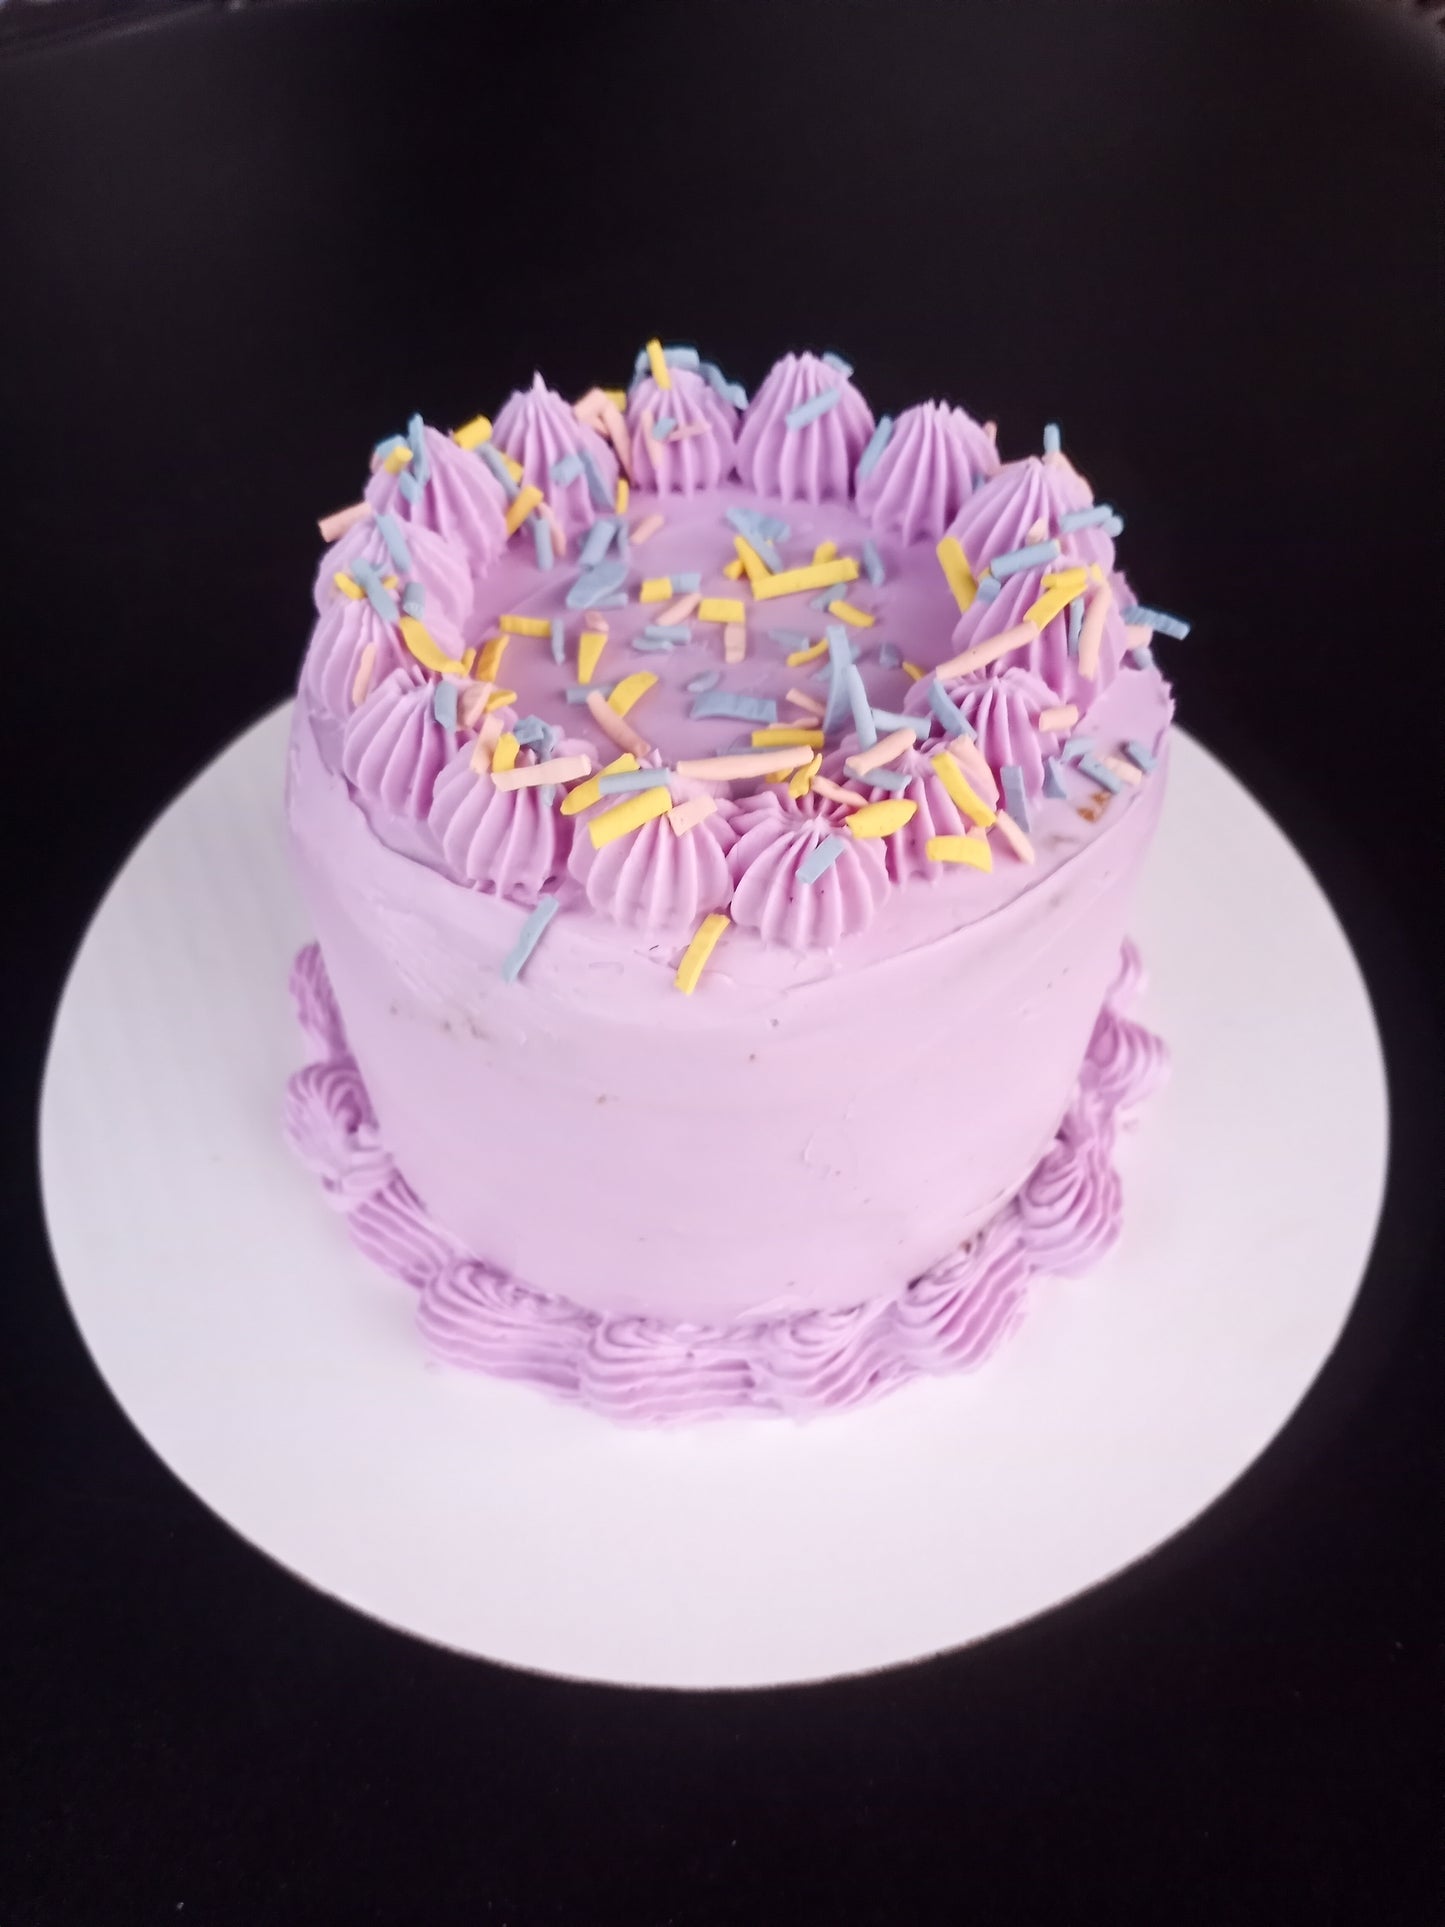 6" Celebration Cakes